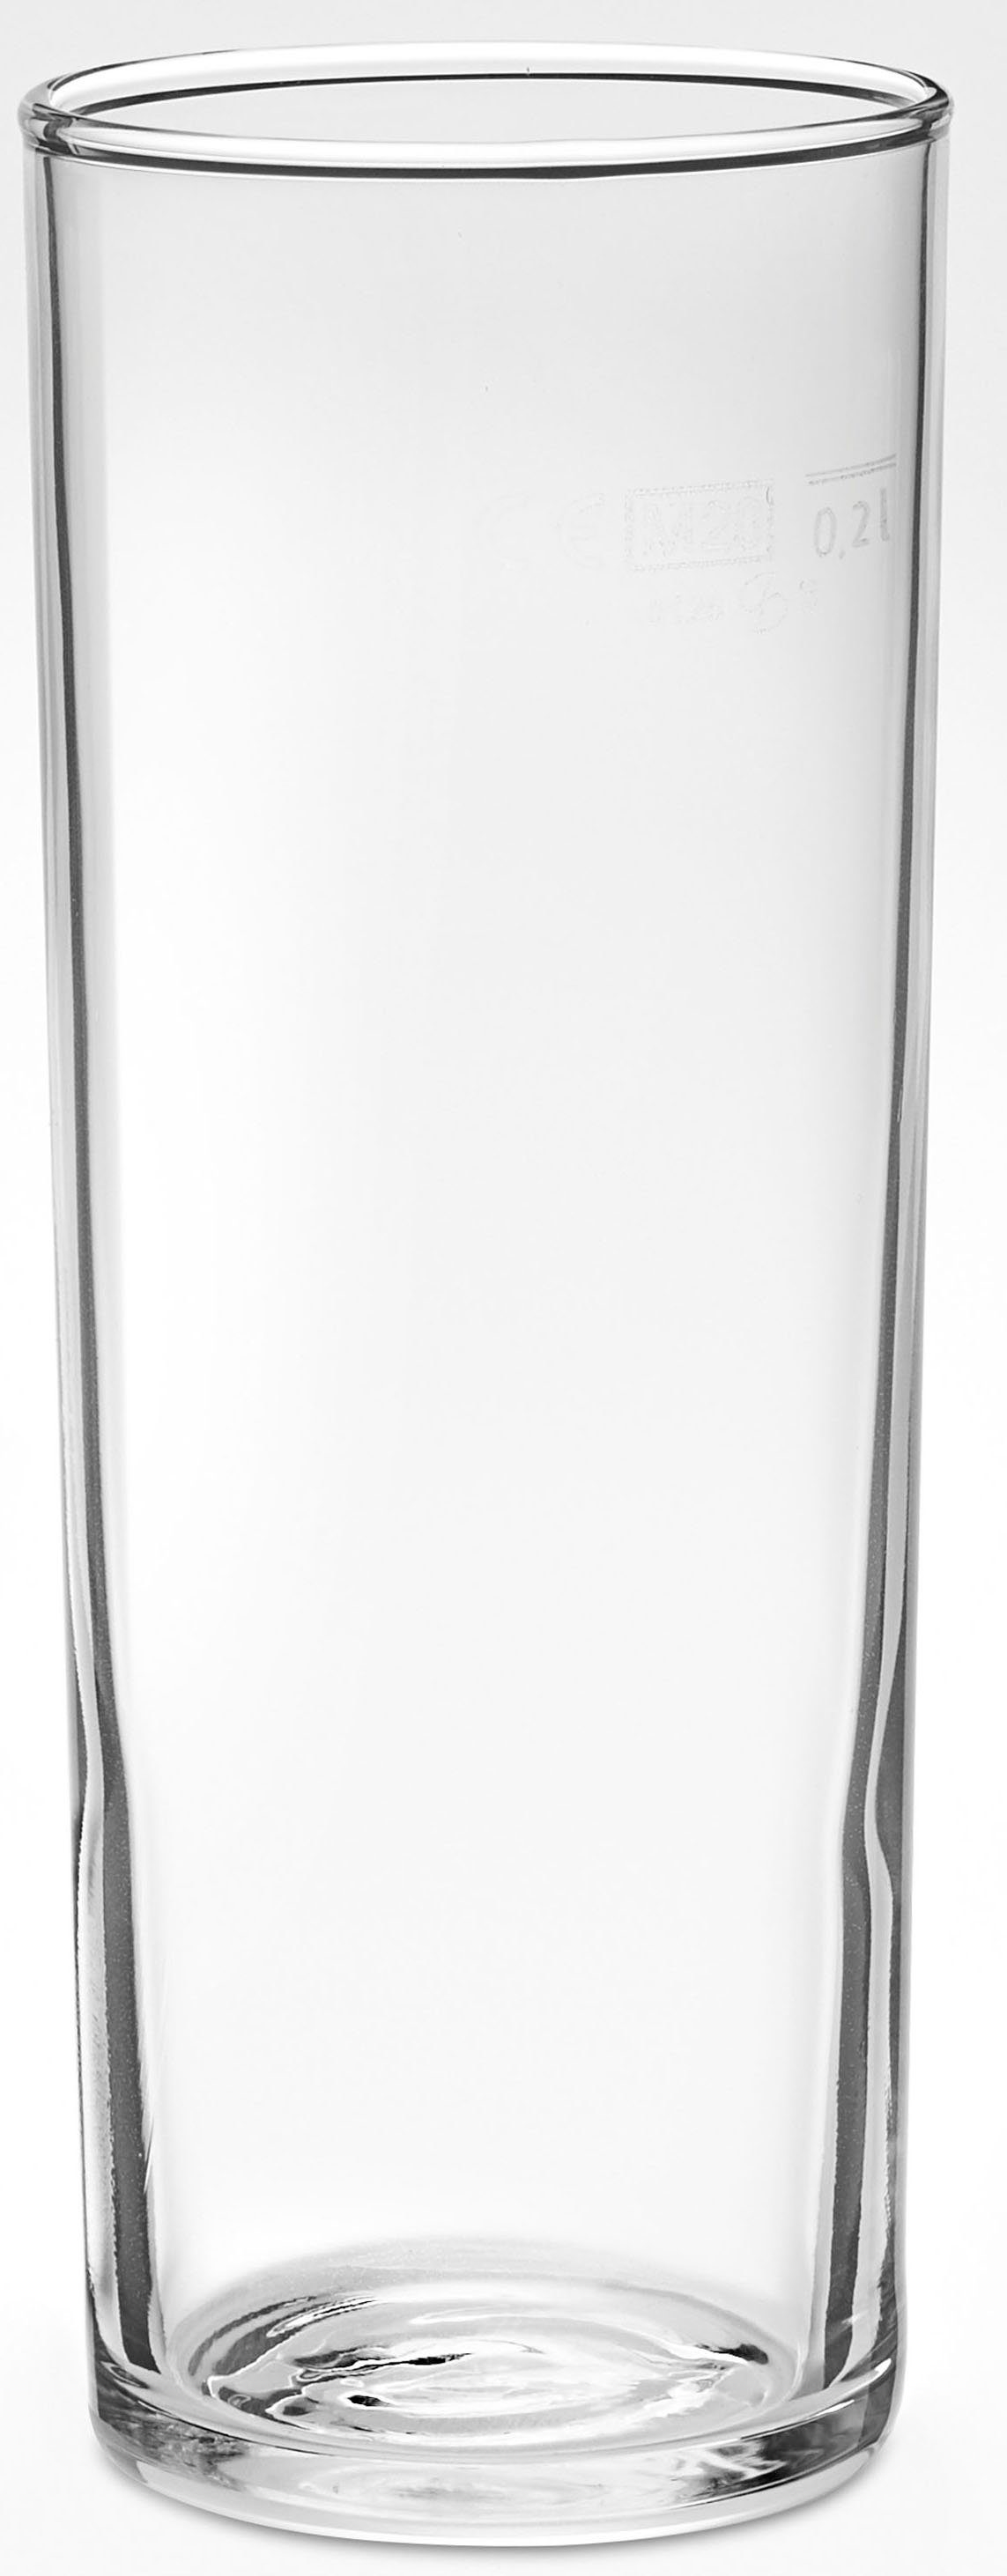 van Well Bierglas Kölnerstange, Glas, 0,2 L, geeicht, spülmaschinenfest, Gastronomiequalität, 12-tlg.